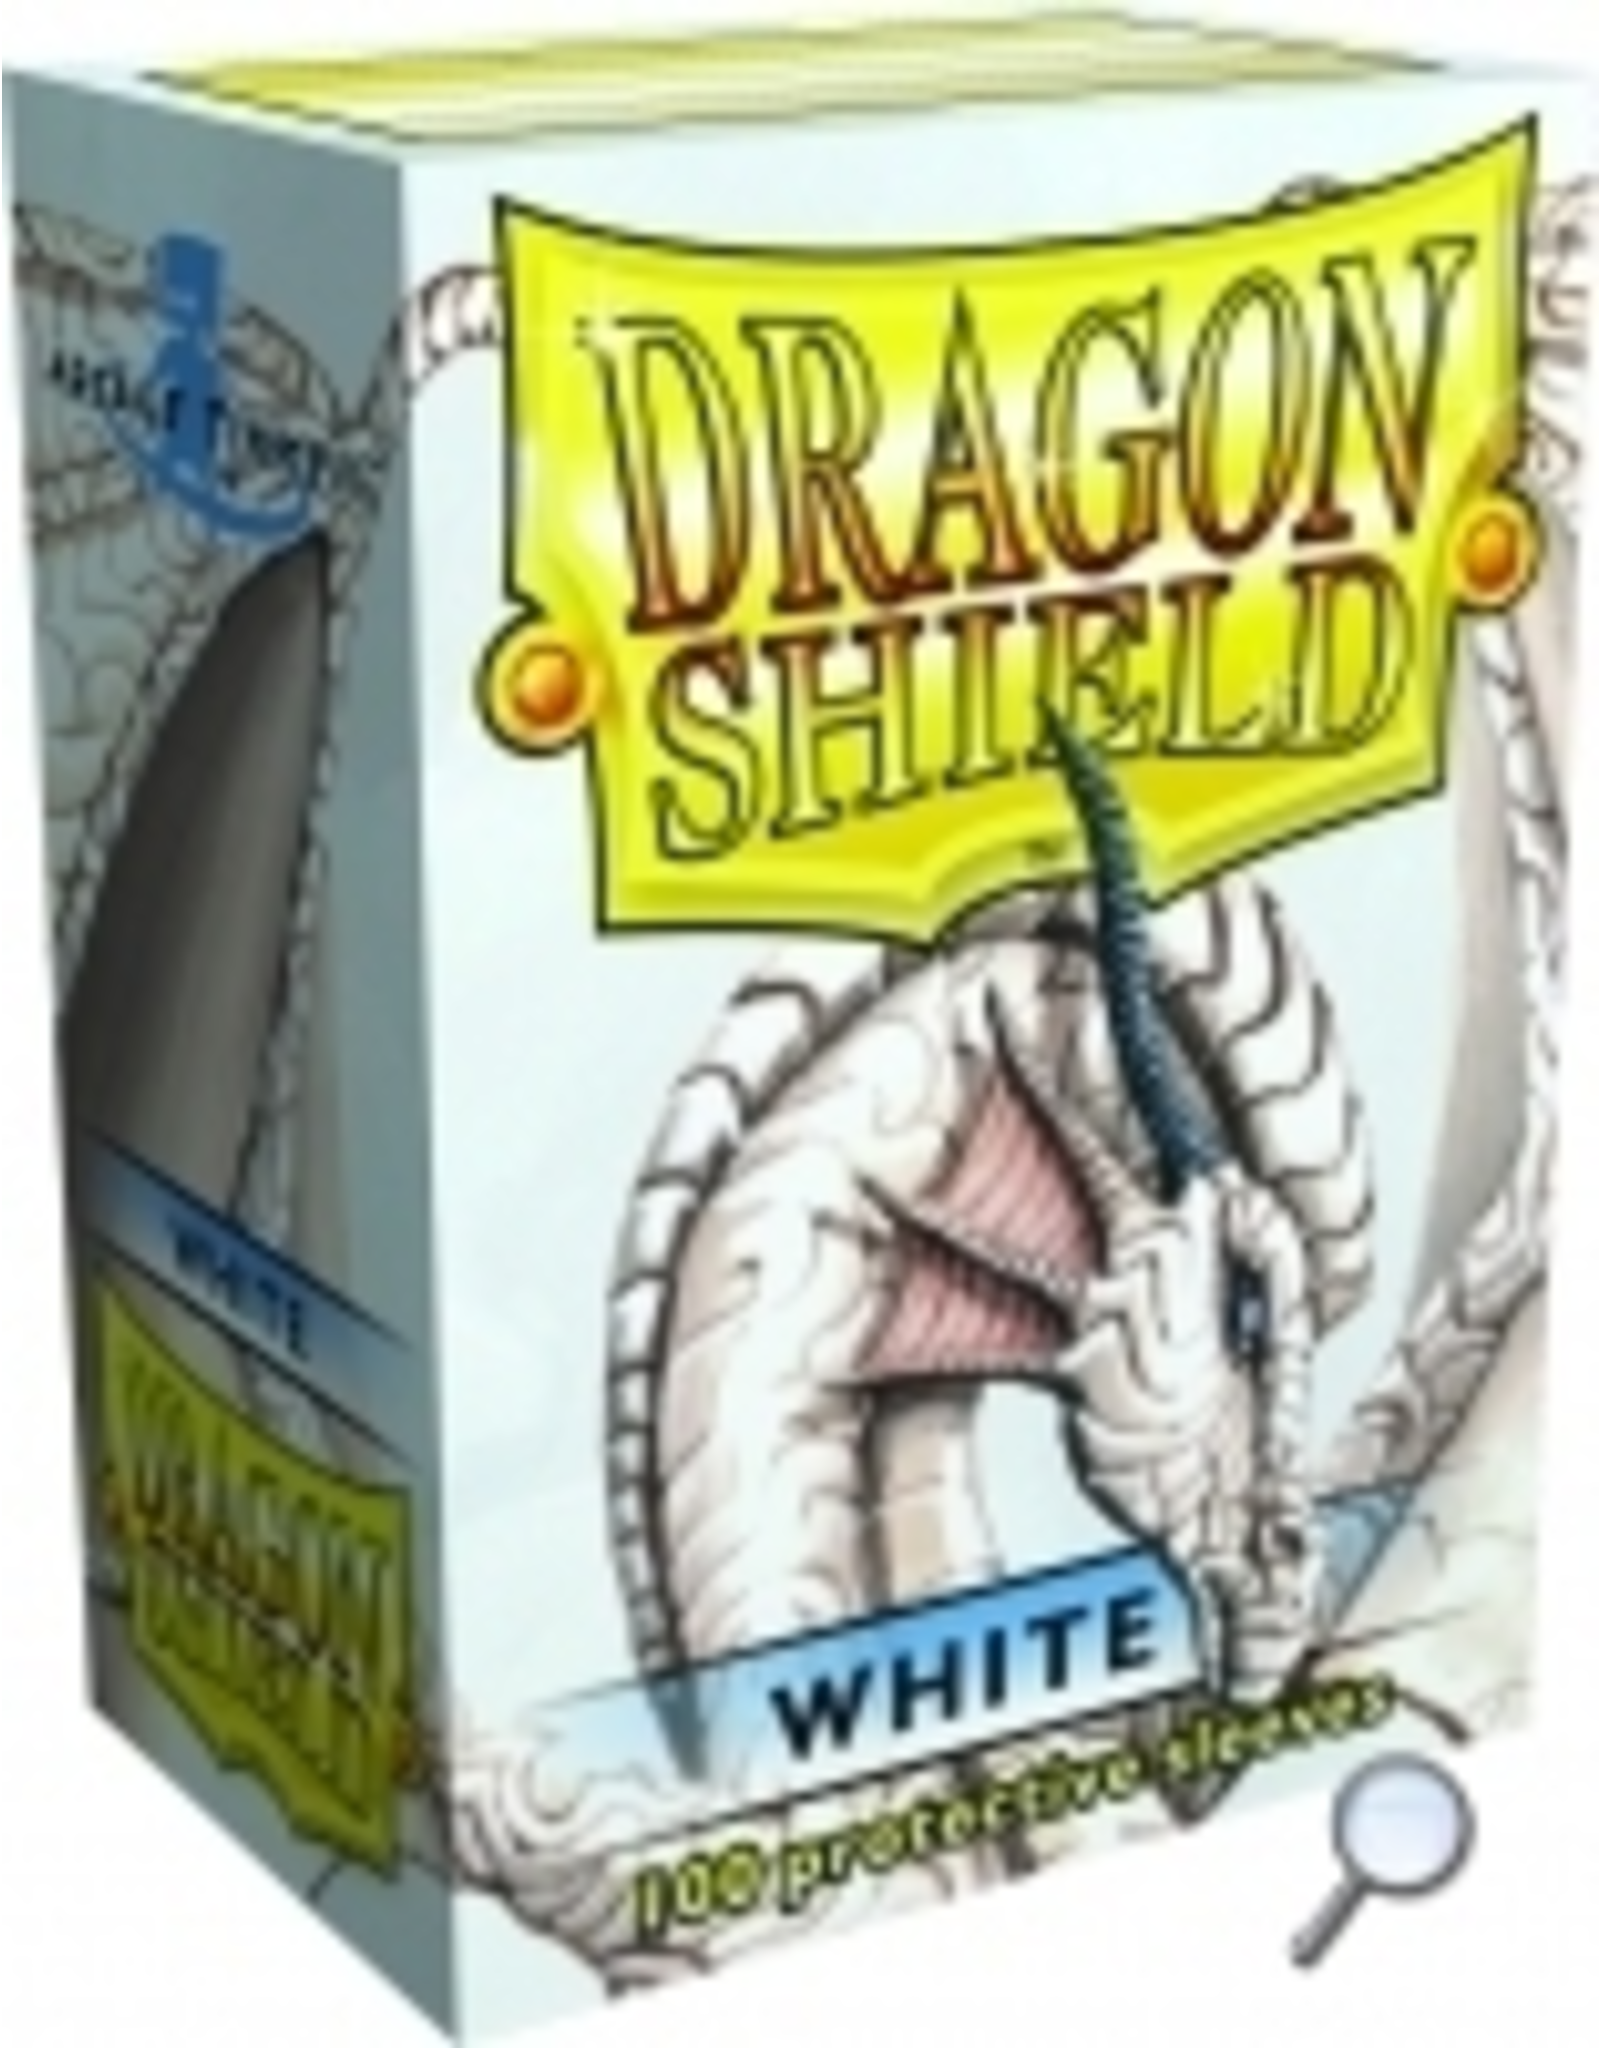 Arcane Tinmen Dragon Shields: (100) White